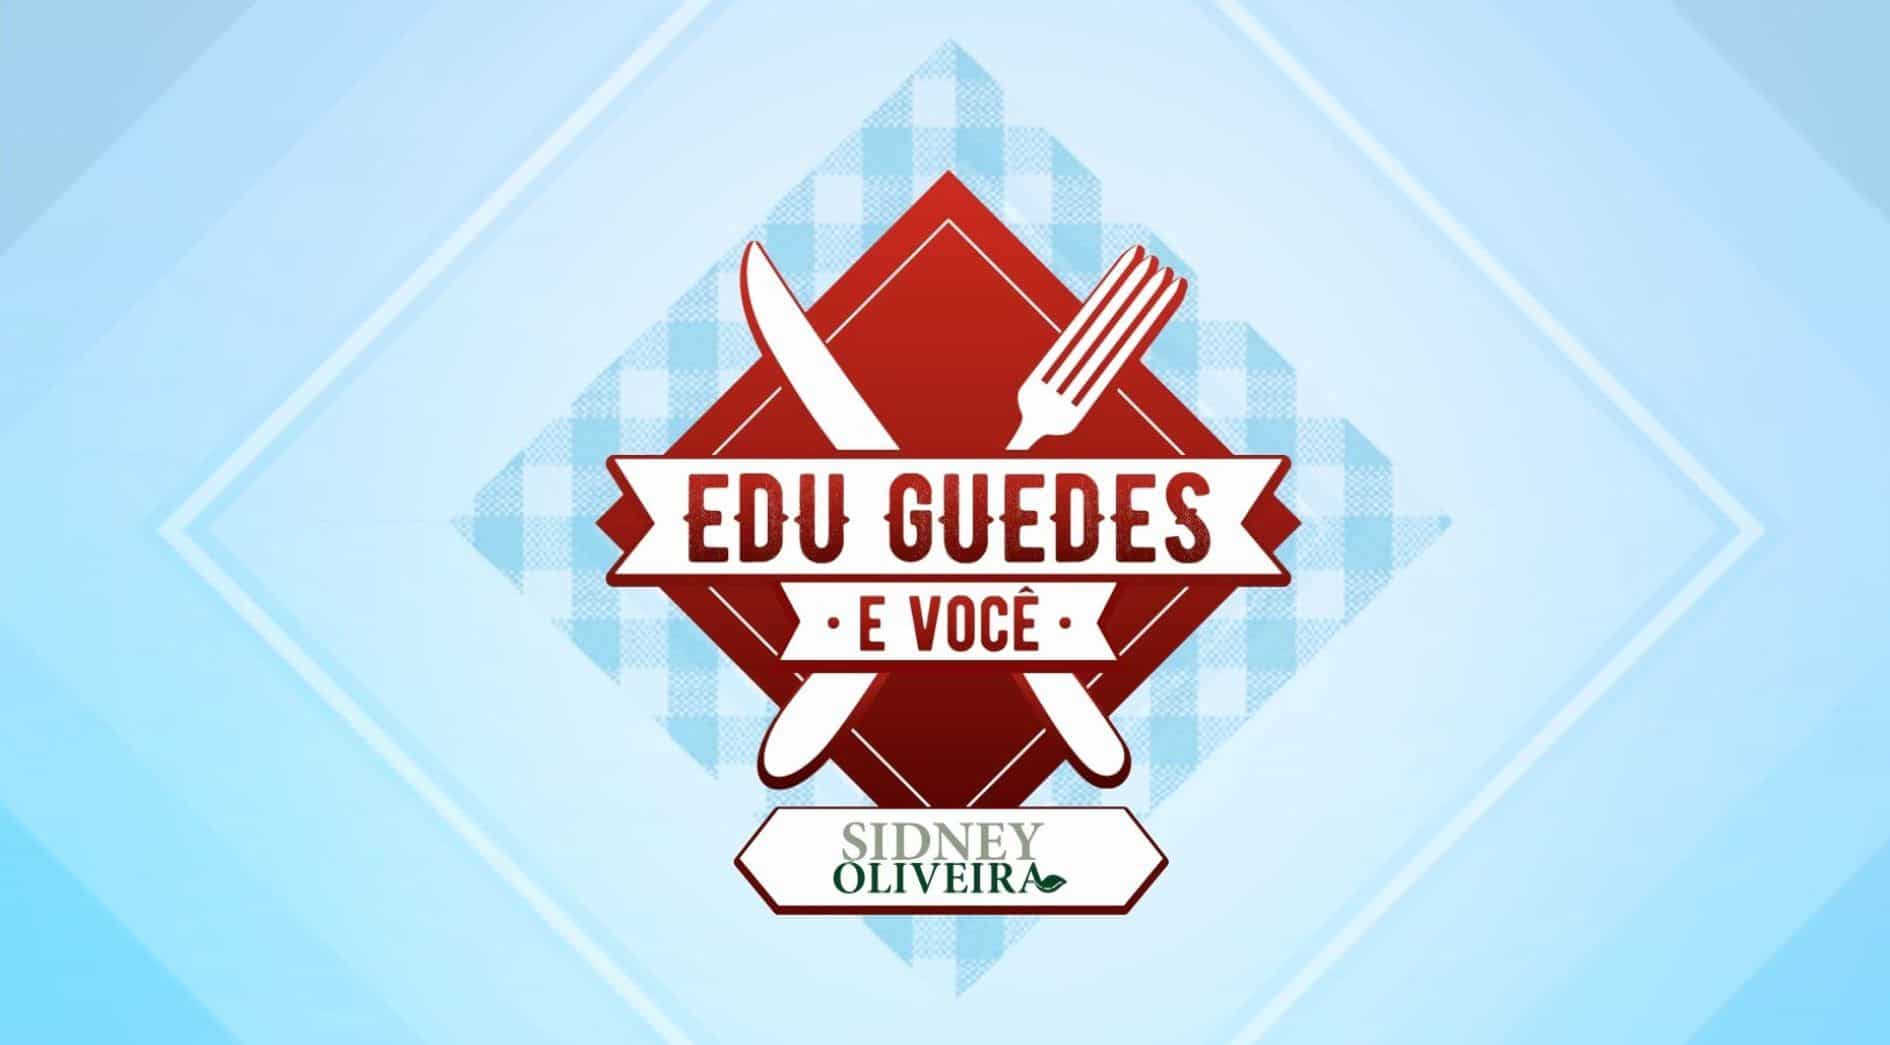 “Edu Guedes e Você” ganha patrocínio master de Sidney Oliveira